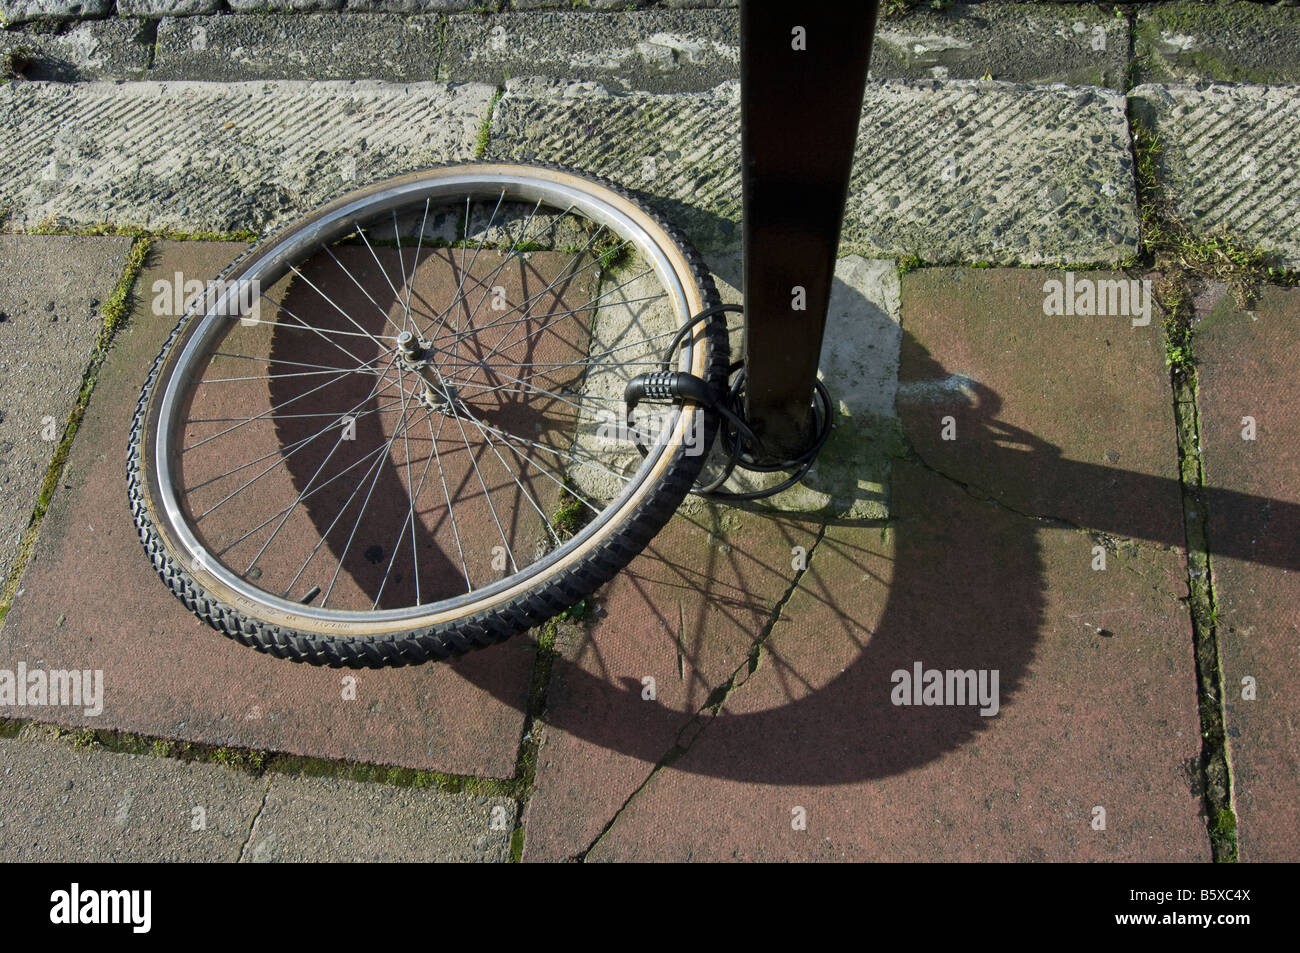 Une roue de vélo attaché à un poteau. Le reste de la moto a été volée. Banque D'Images